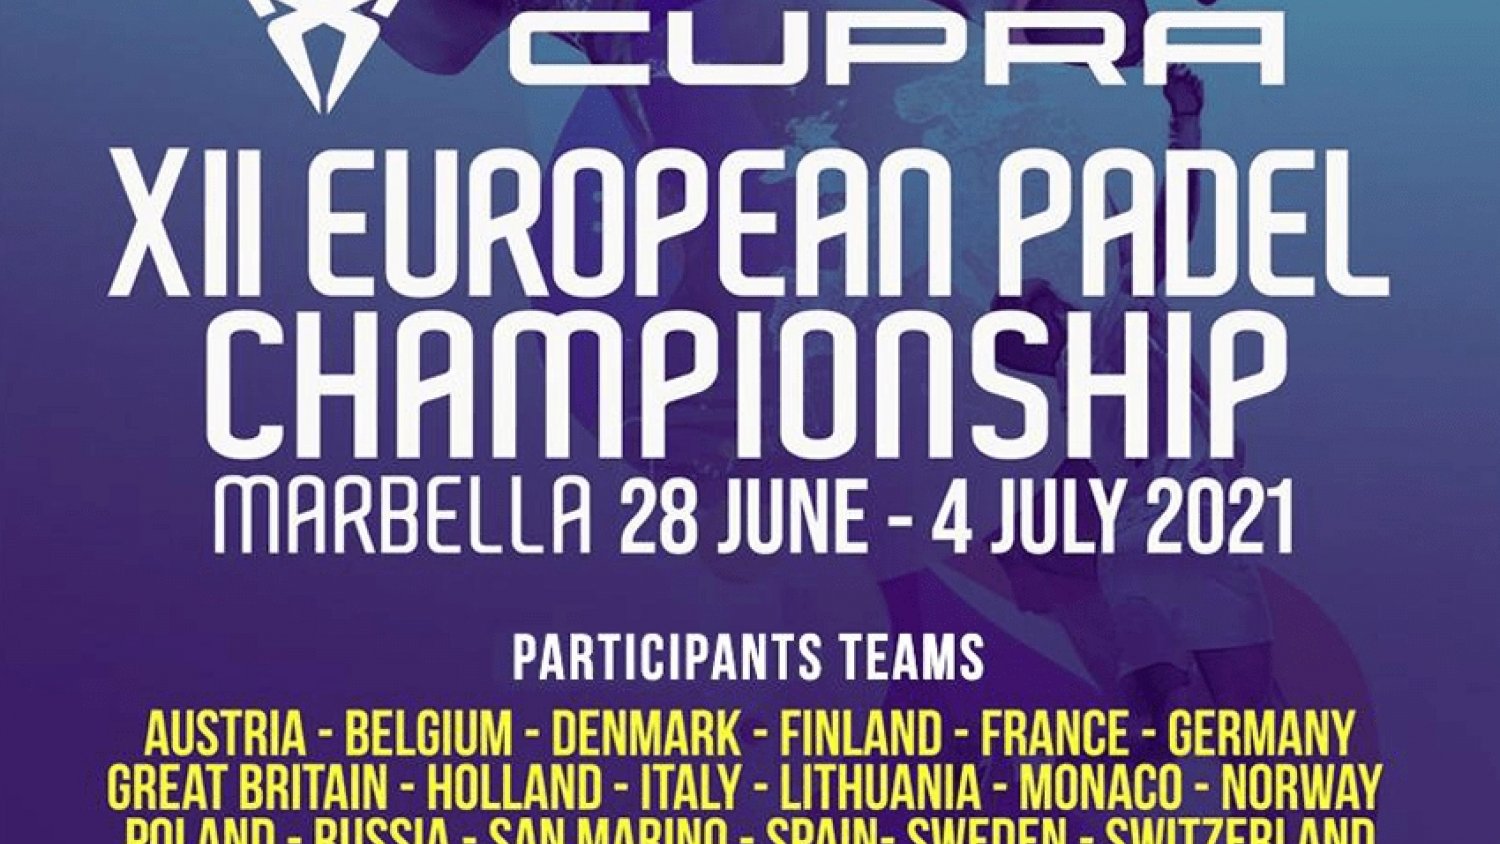 Marbella acoge el XII Campeonato Europeo de Pádel con más de 400 participantes